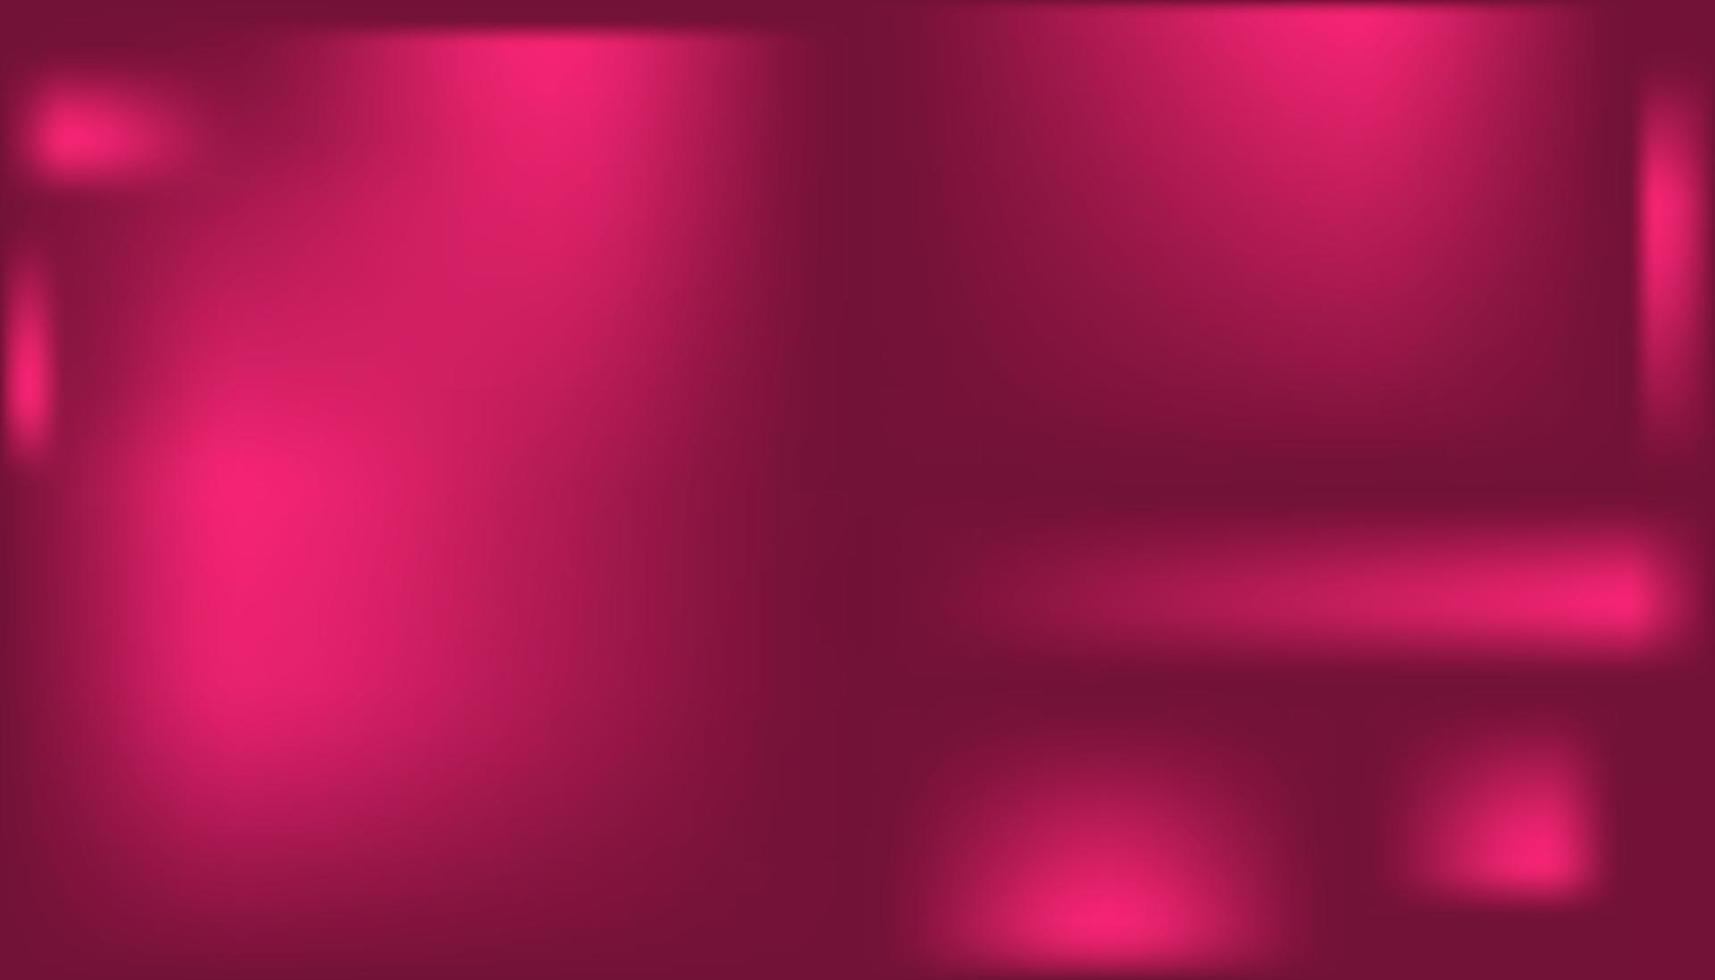 abstrato azul, roxo, rosa cor vibrante turva fundo. pano de fundo gradiente suave de escuro a claro com lugar para vetor de texto